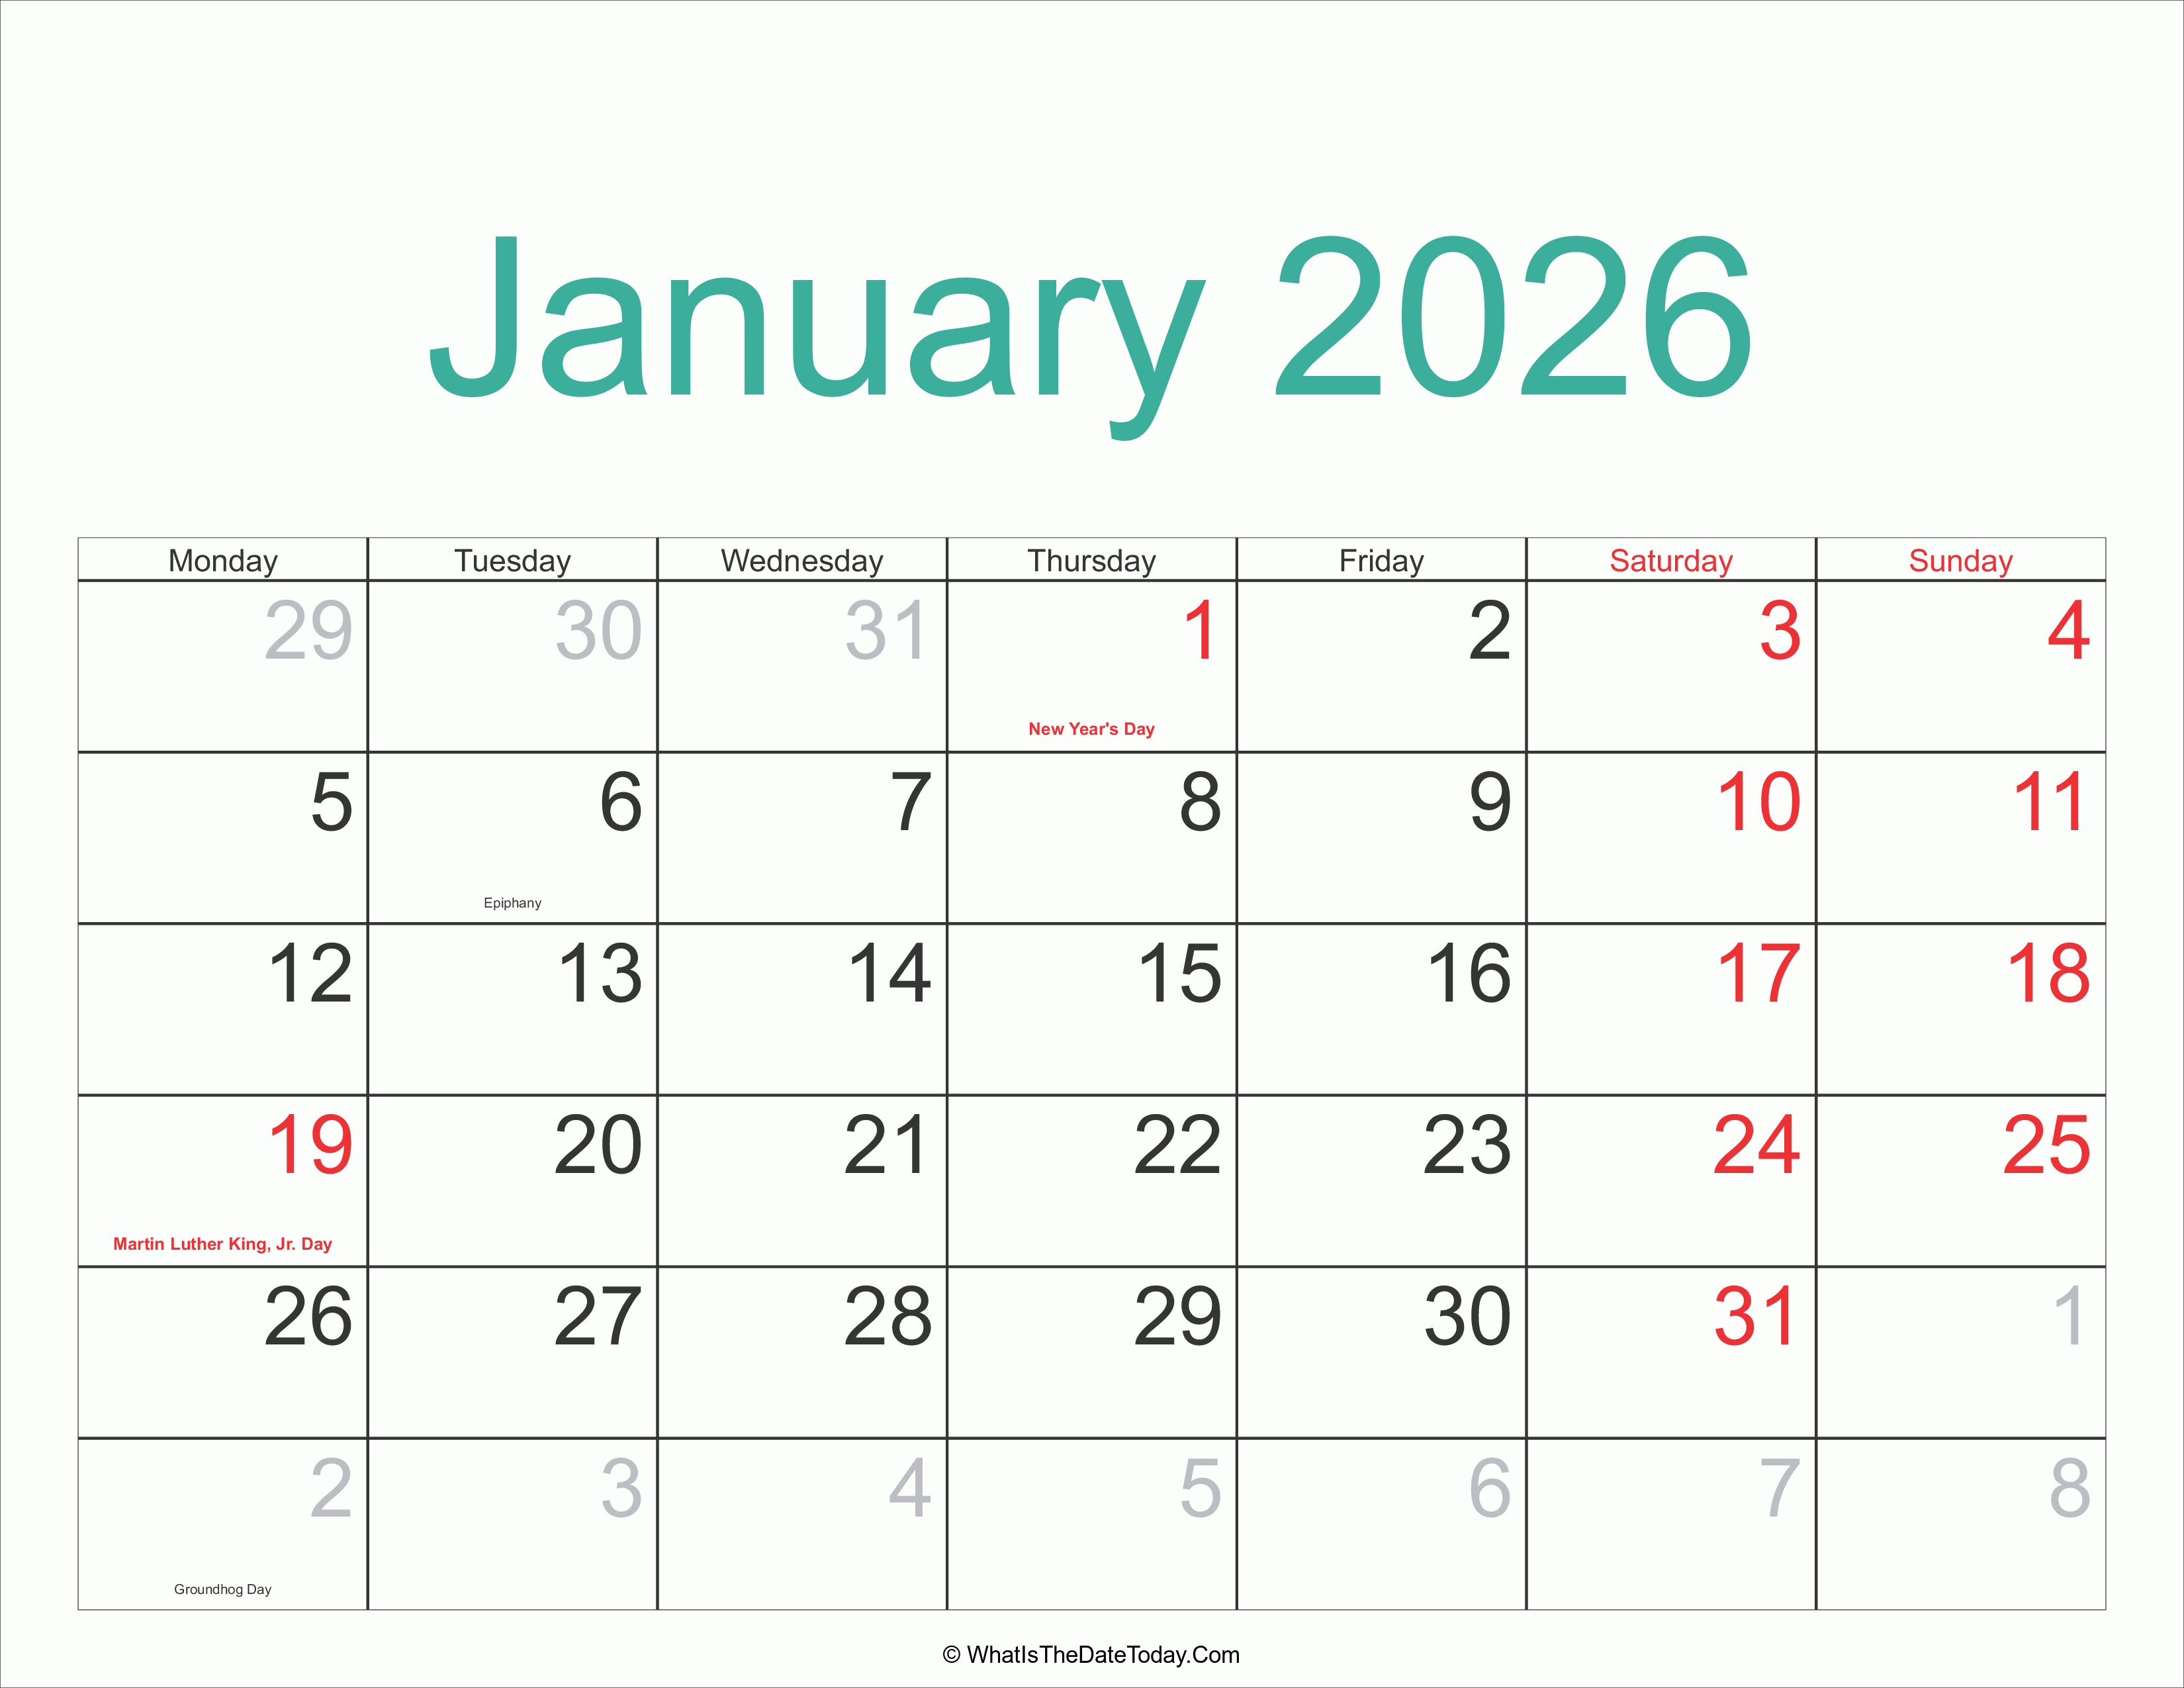 October 2025 Through January 2026 Calendar 